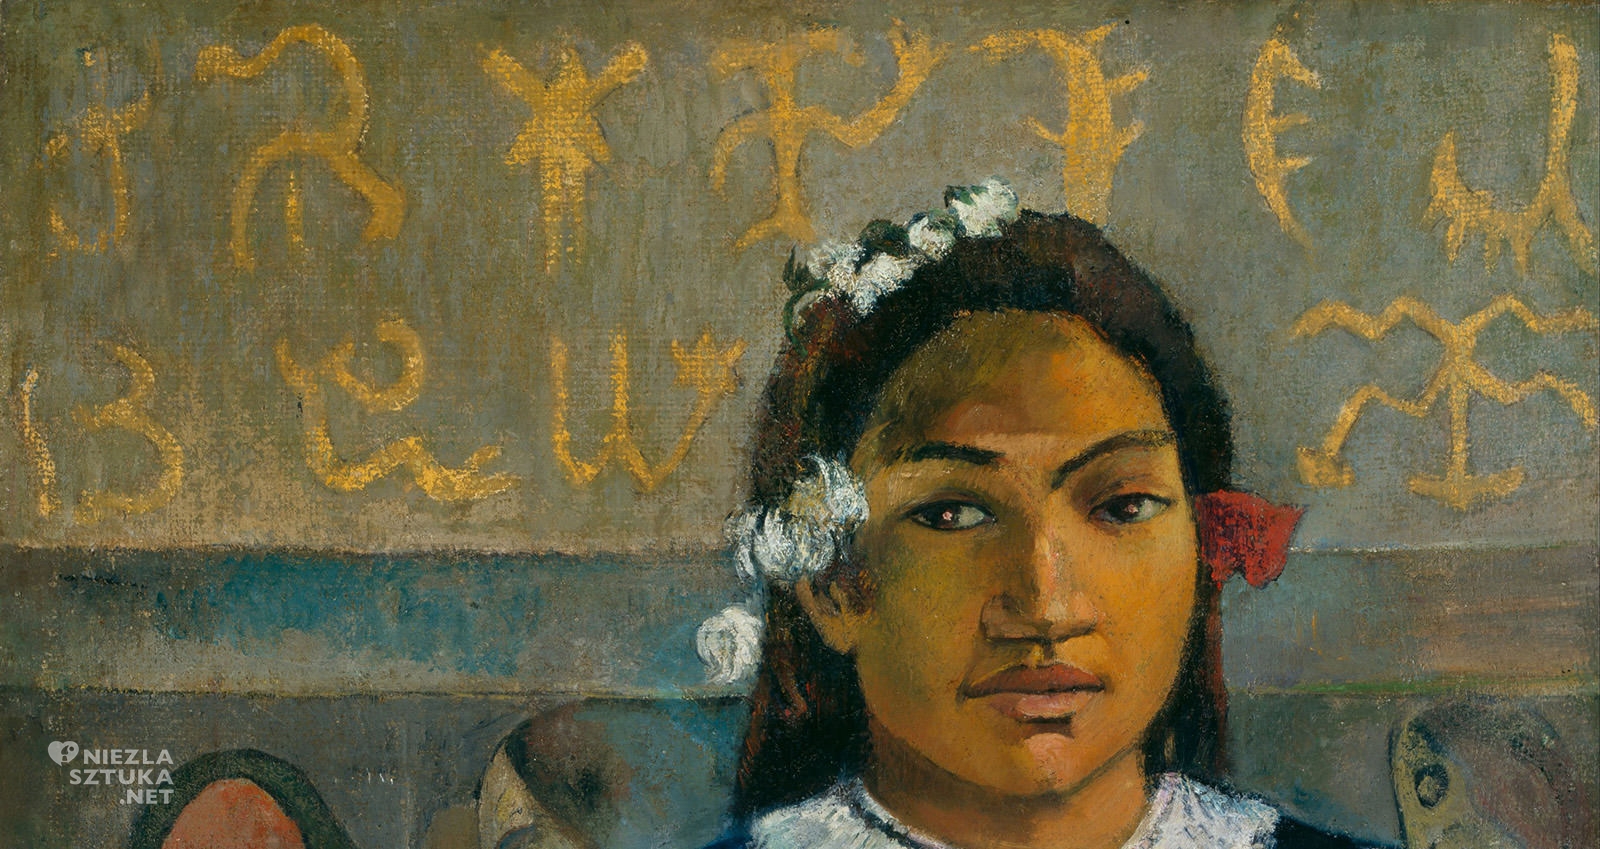 Paul Gauguin, Merahi metua no Tehamana, Tahiti, detal, Niezła Sztuka